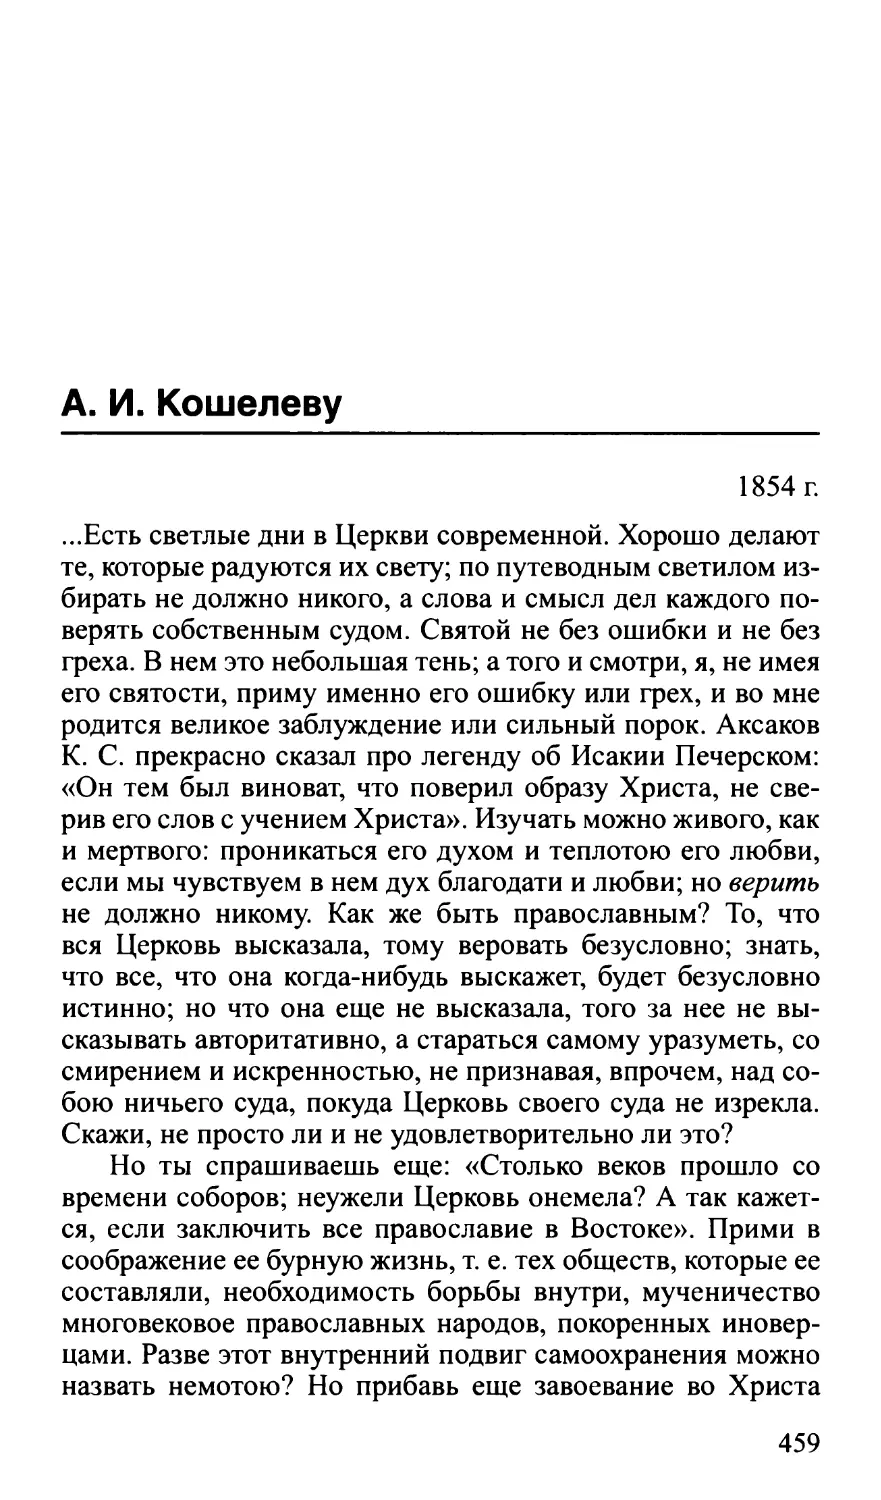 А.И. Кошелеву. 1854 г.